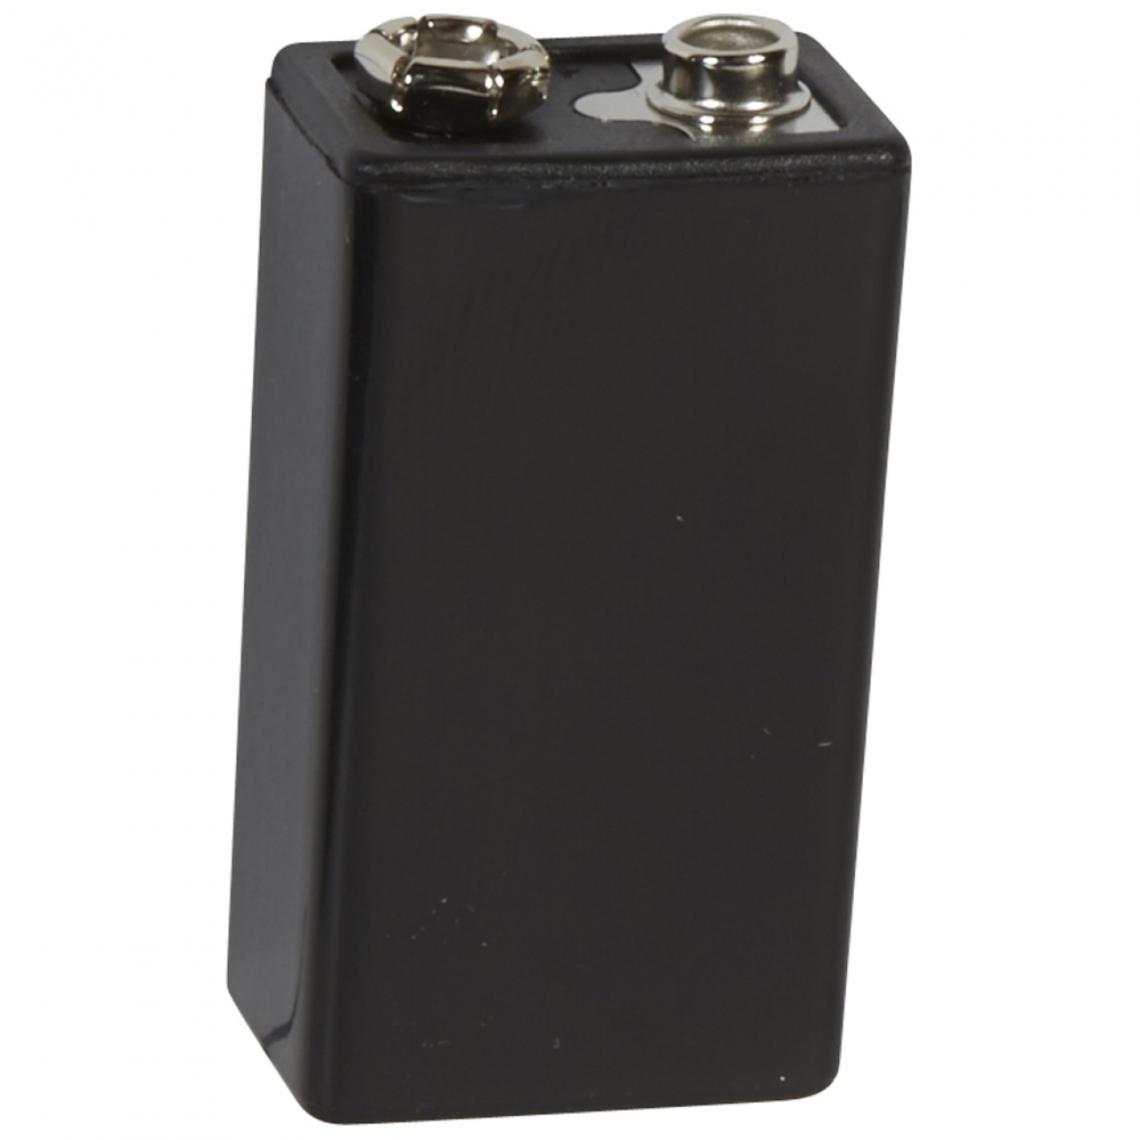 Legrand - batterie nimh - 8.4 volts - 200 mah - legrand 040755 - Accessoires sécurité connectée